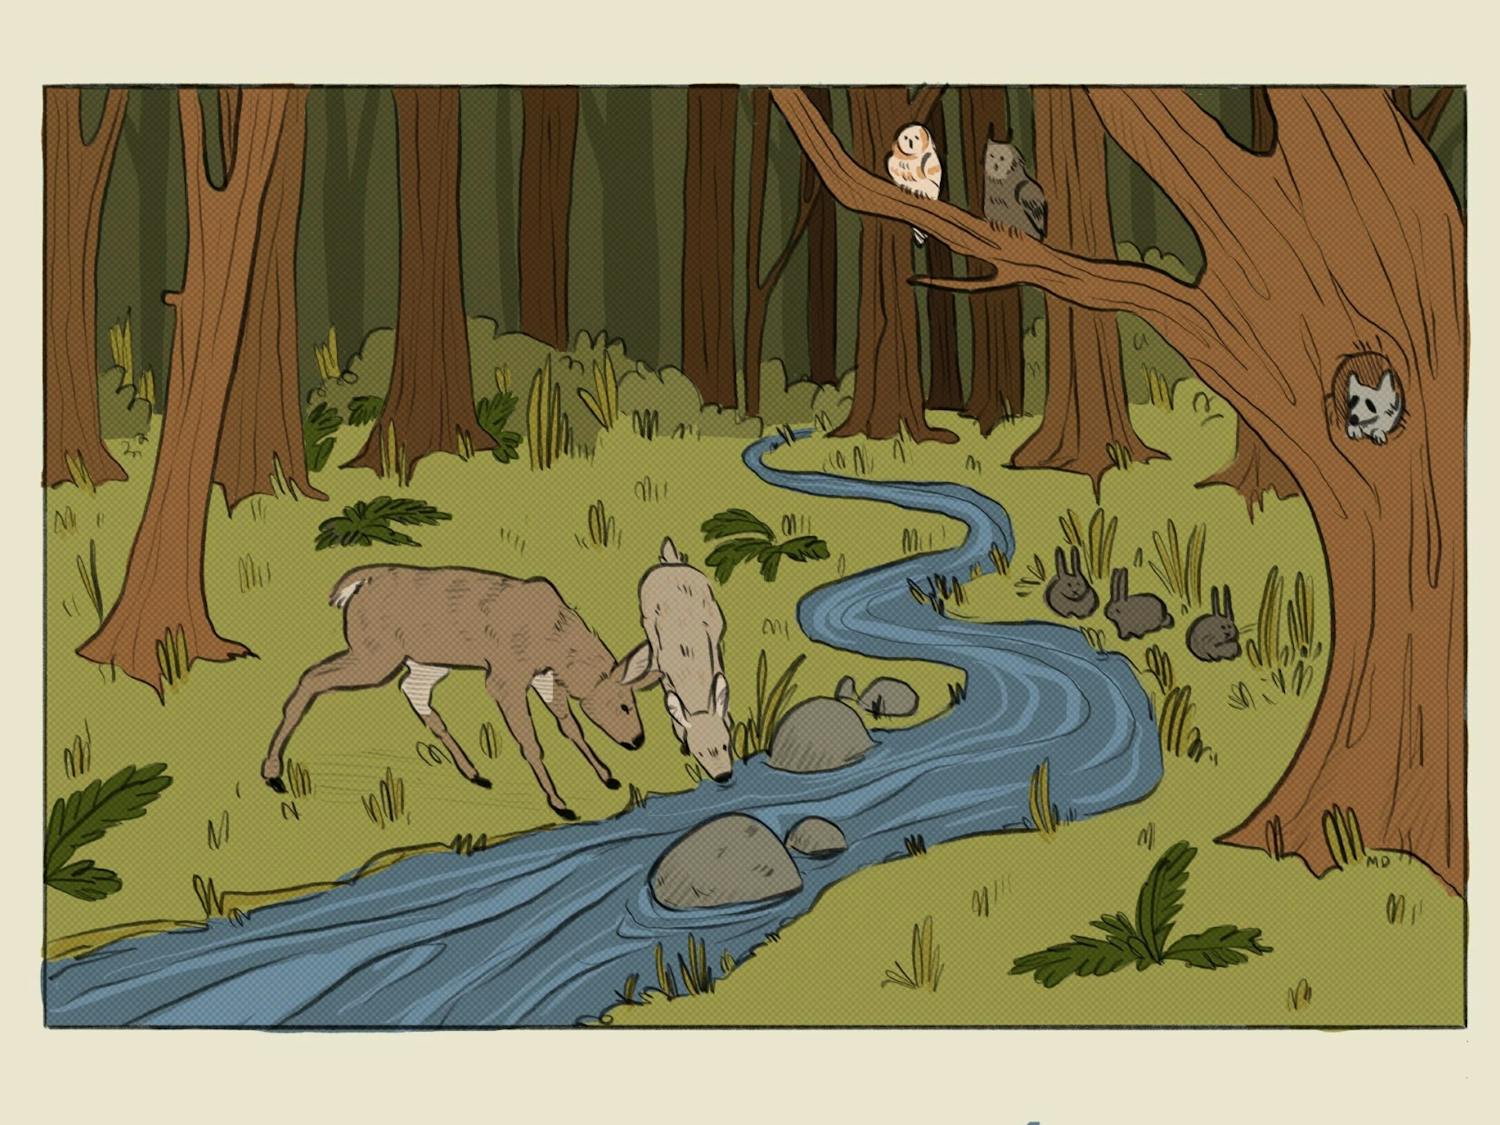 Forest illustration